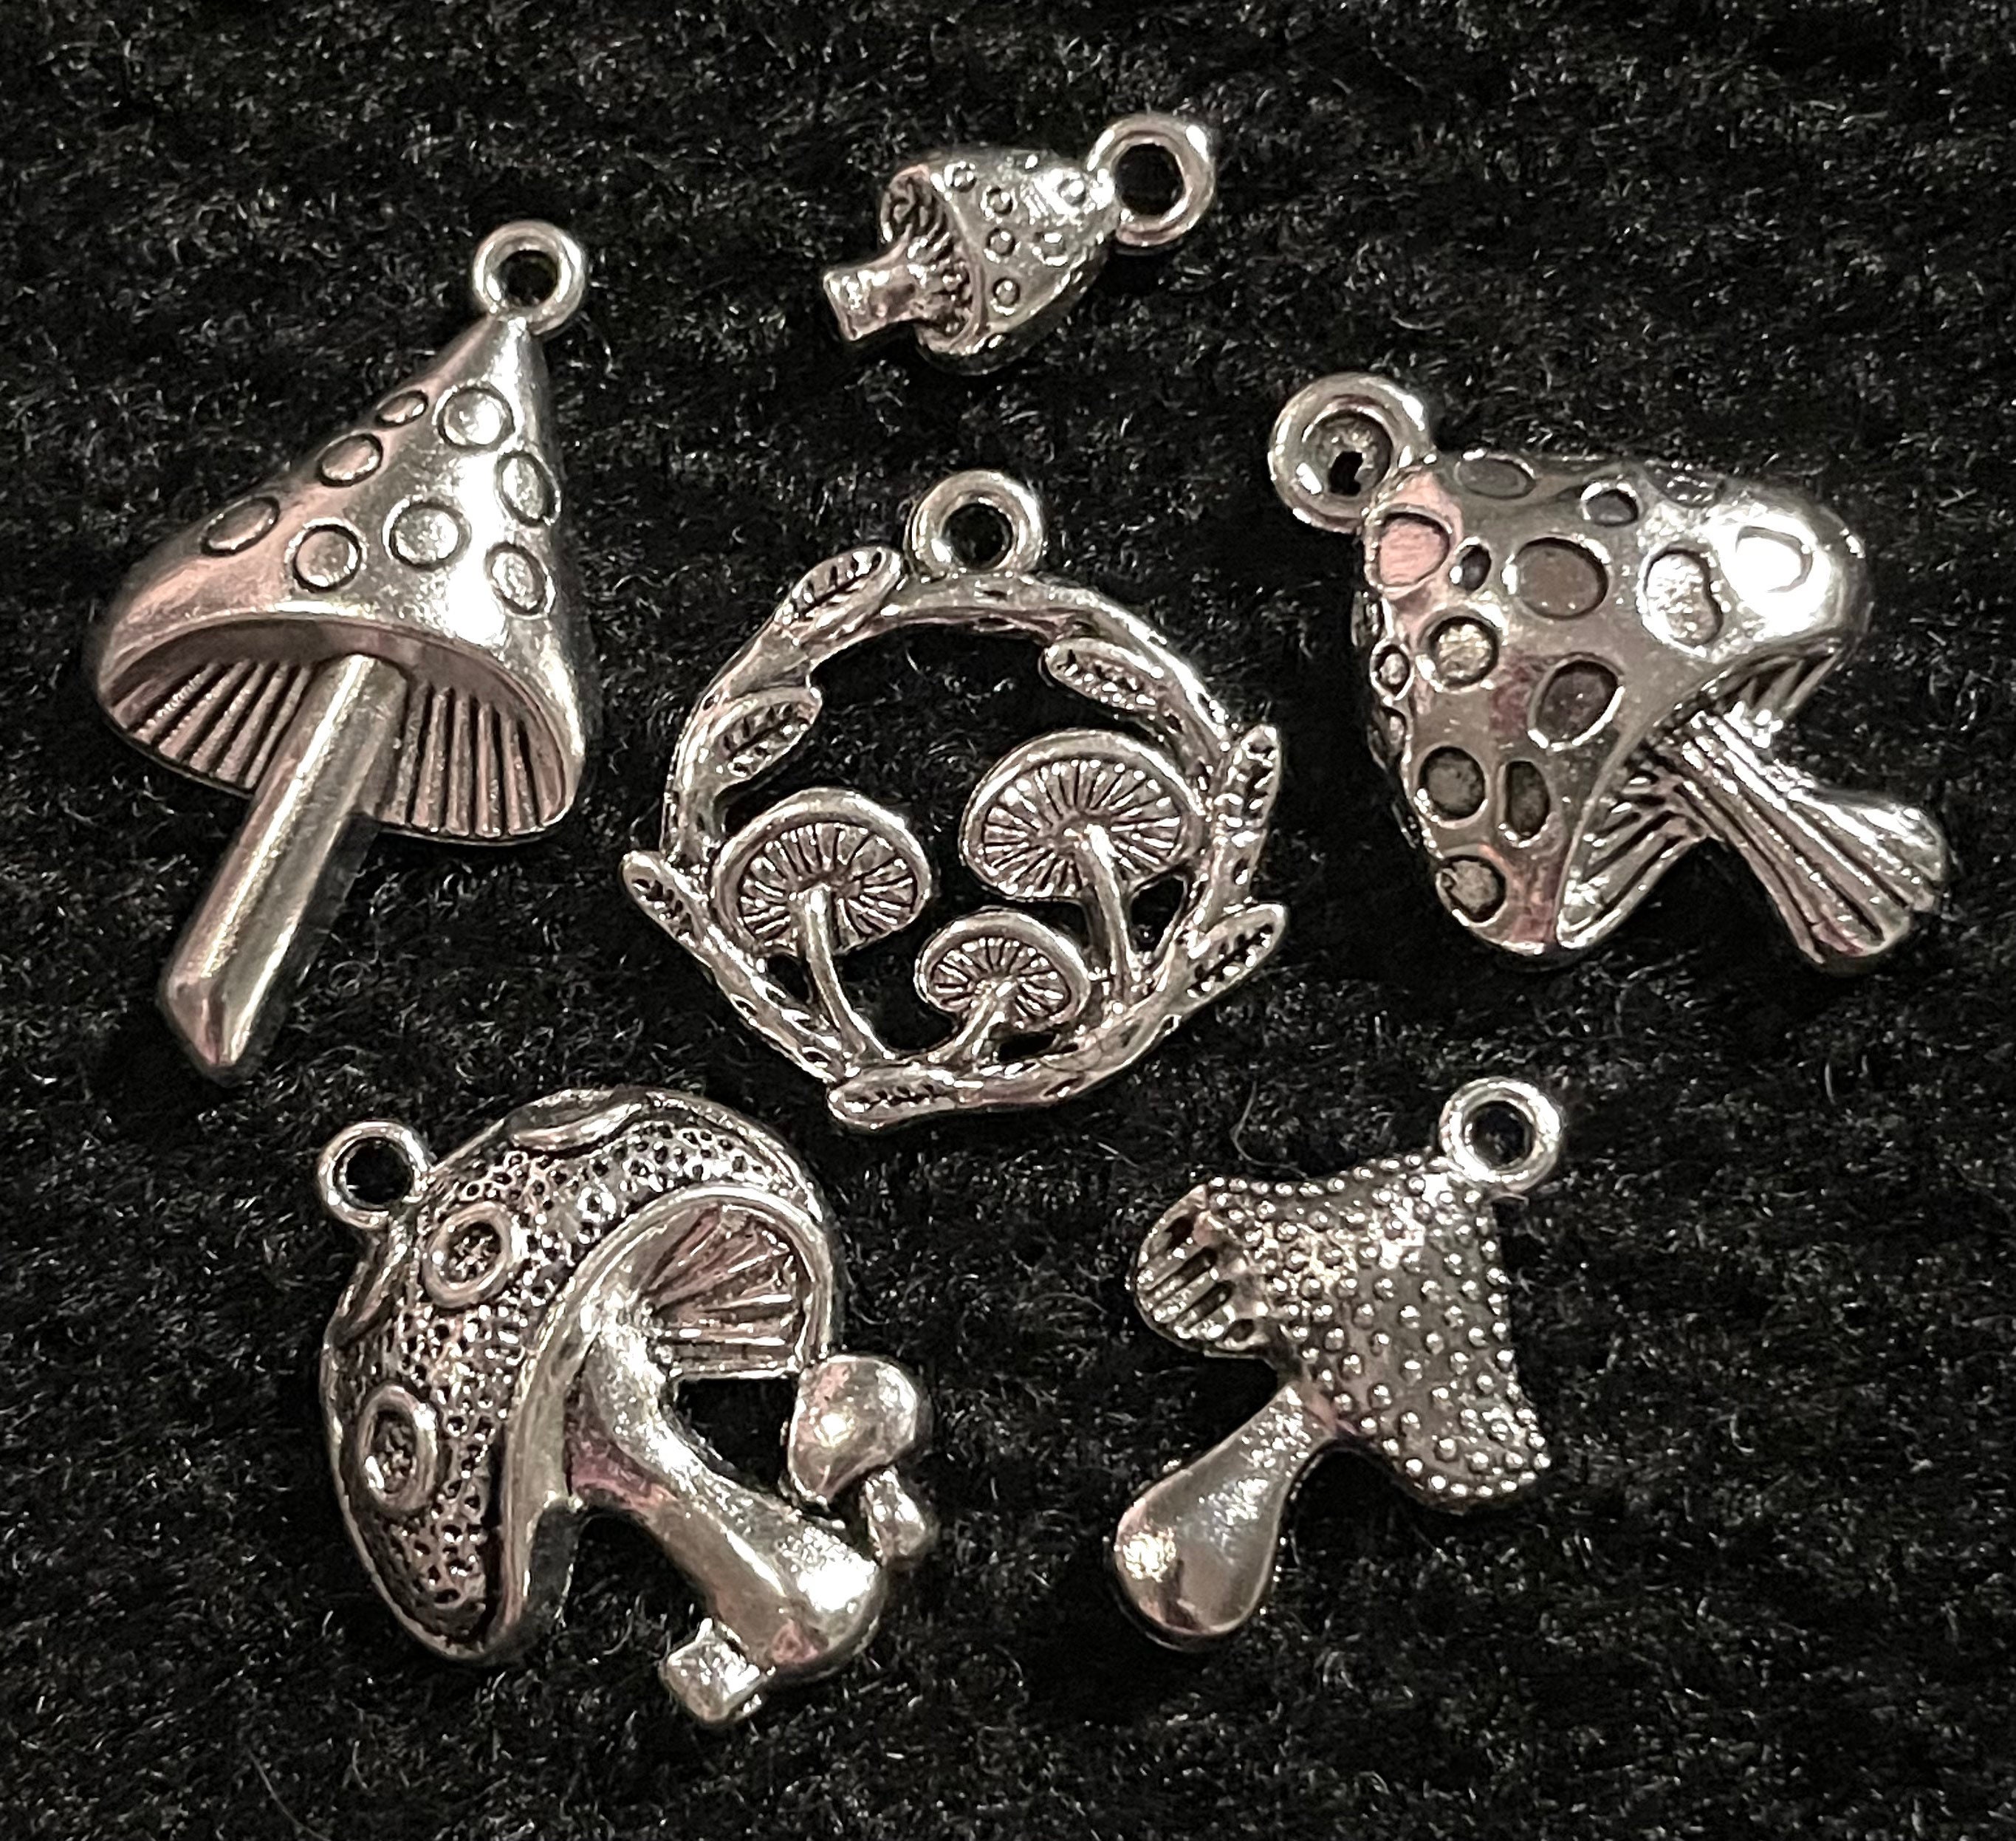 10 Piece Baking Themed Charm Assortment Tibetan Silver Metal